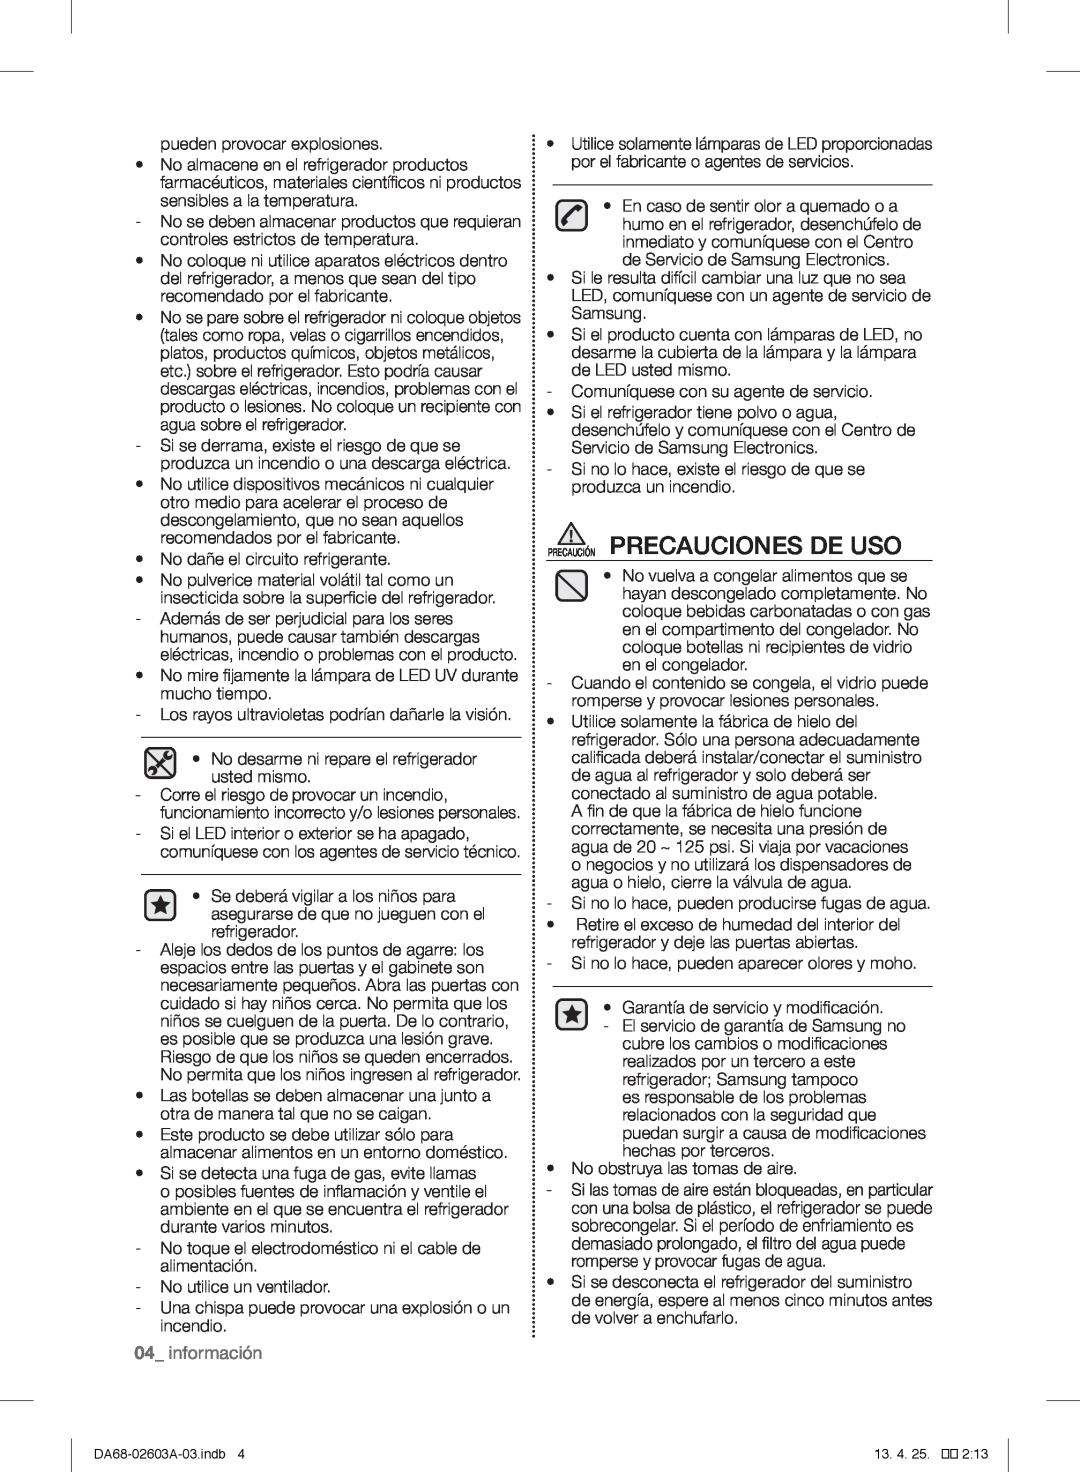 Samsung RF323TEDBBC, RF323TEDBWW, RF323TEDBSR user manual Precaución Precauciones De Uso, información 